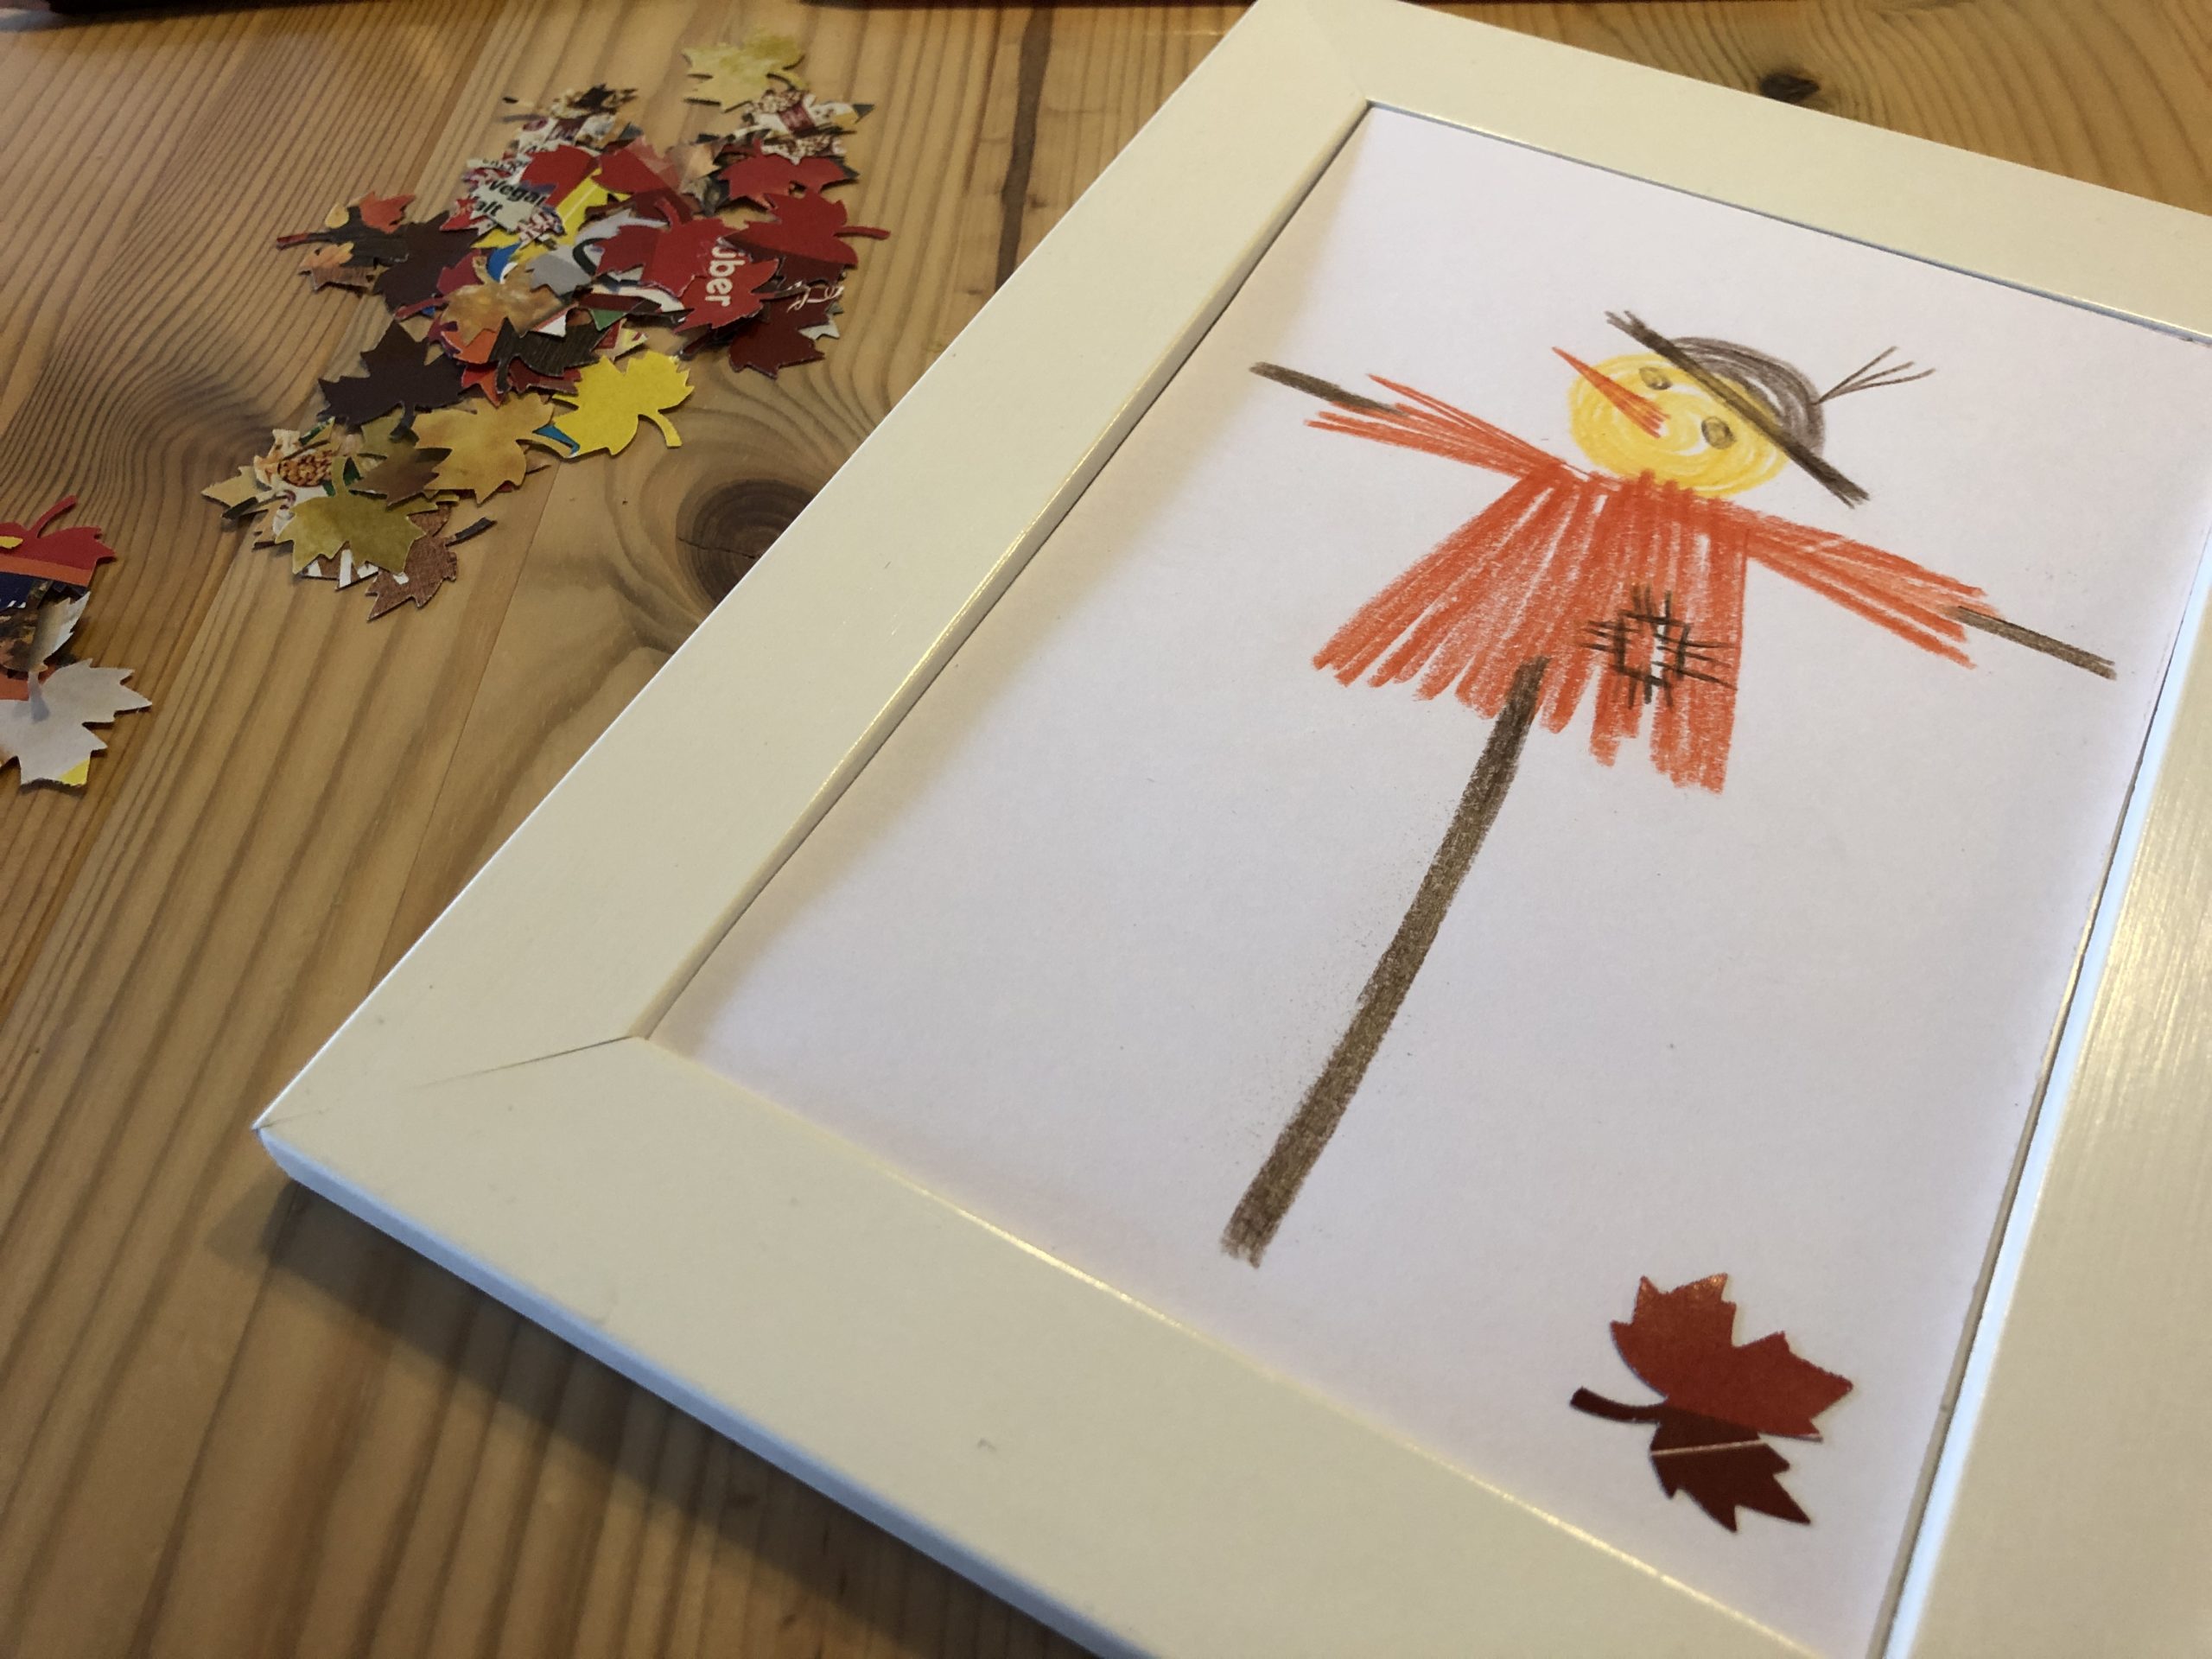 2. Bild zum Schritt 4 für das Bastel- und DIY-Abenteuer für Kinder: 'Wenn ihr eine Vogelscheuche gemalt habt, legt sie in einen...'